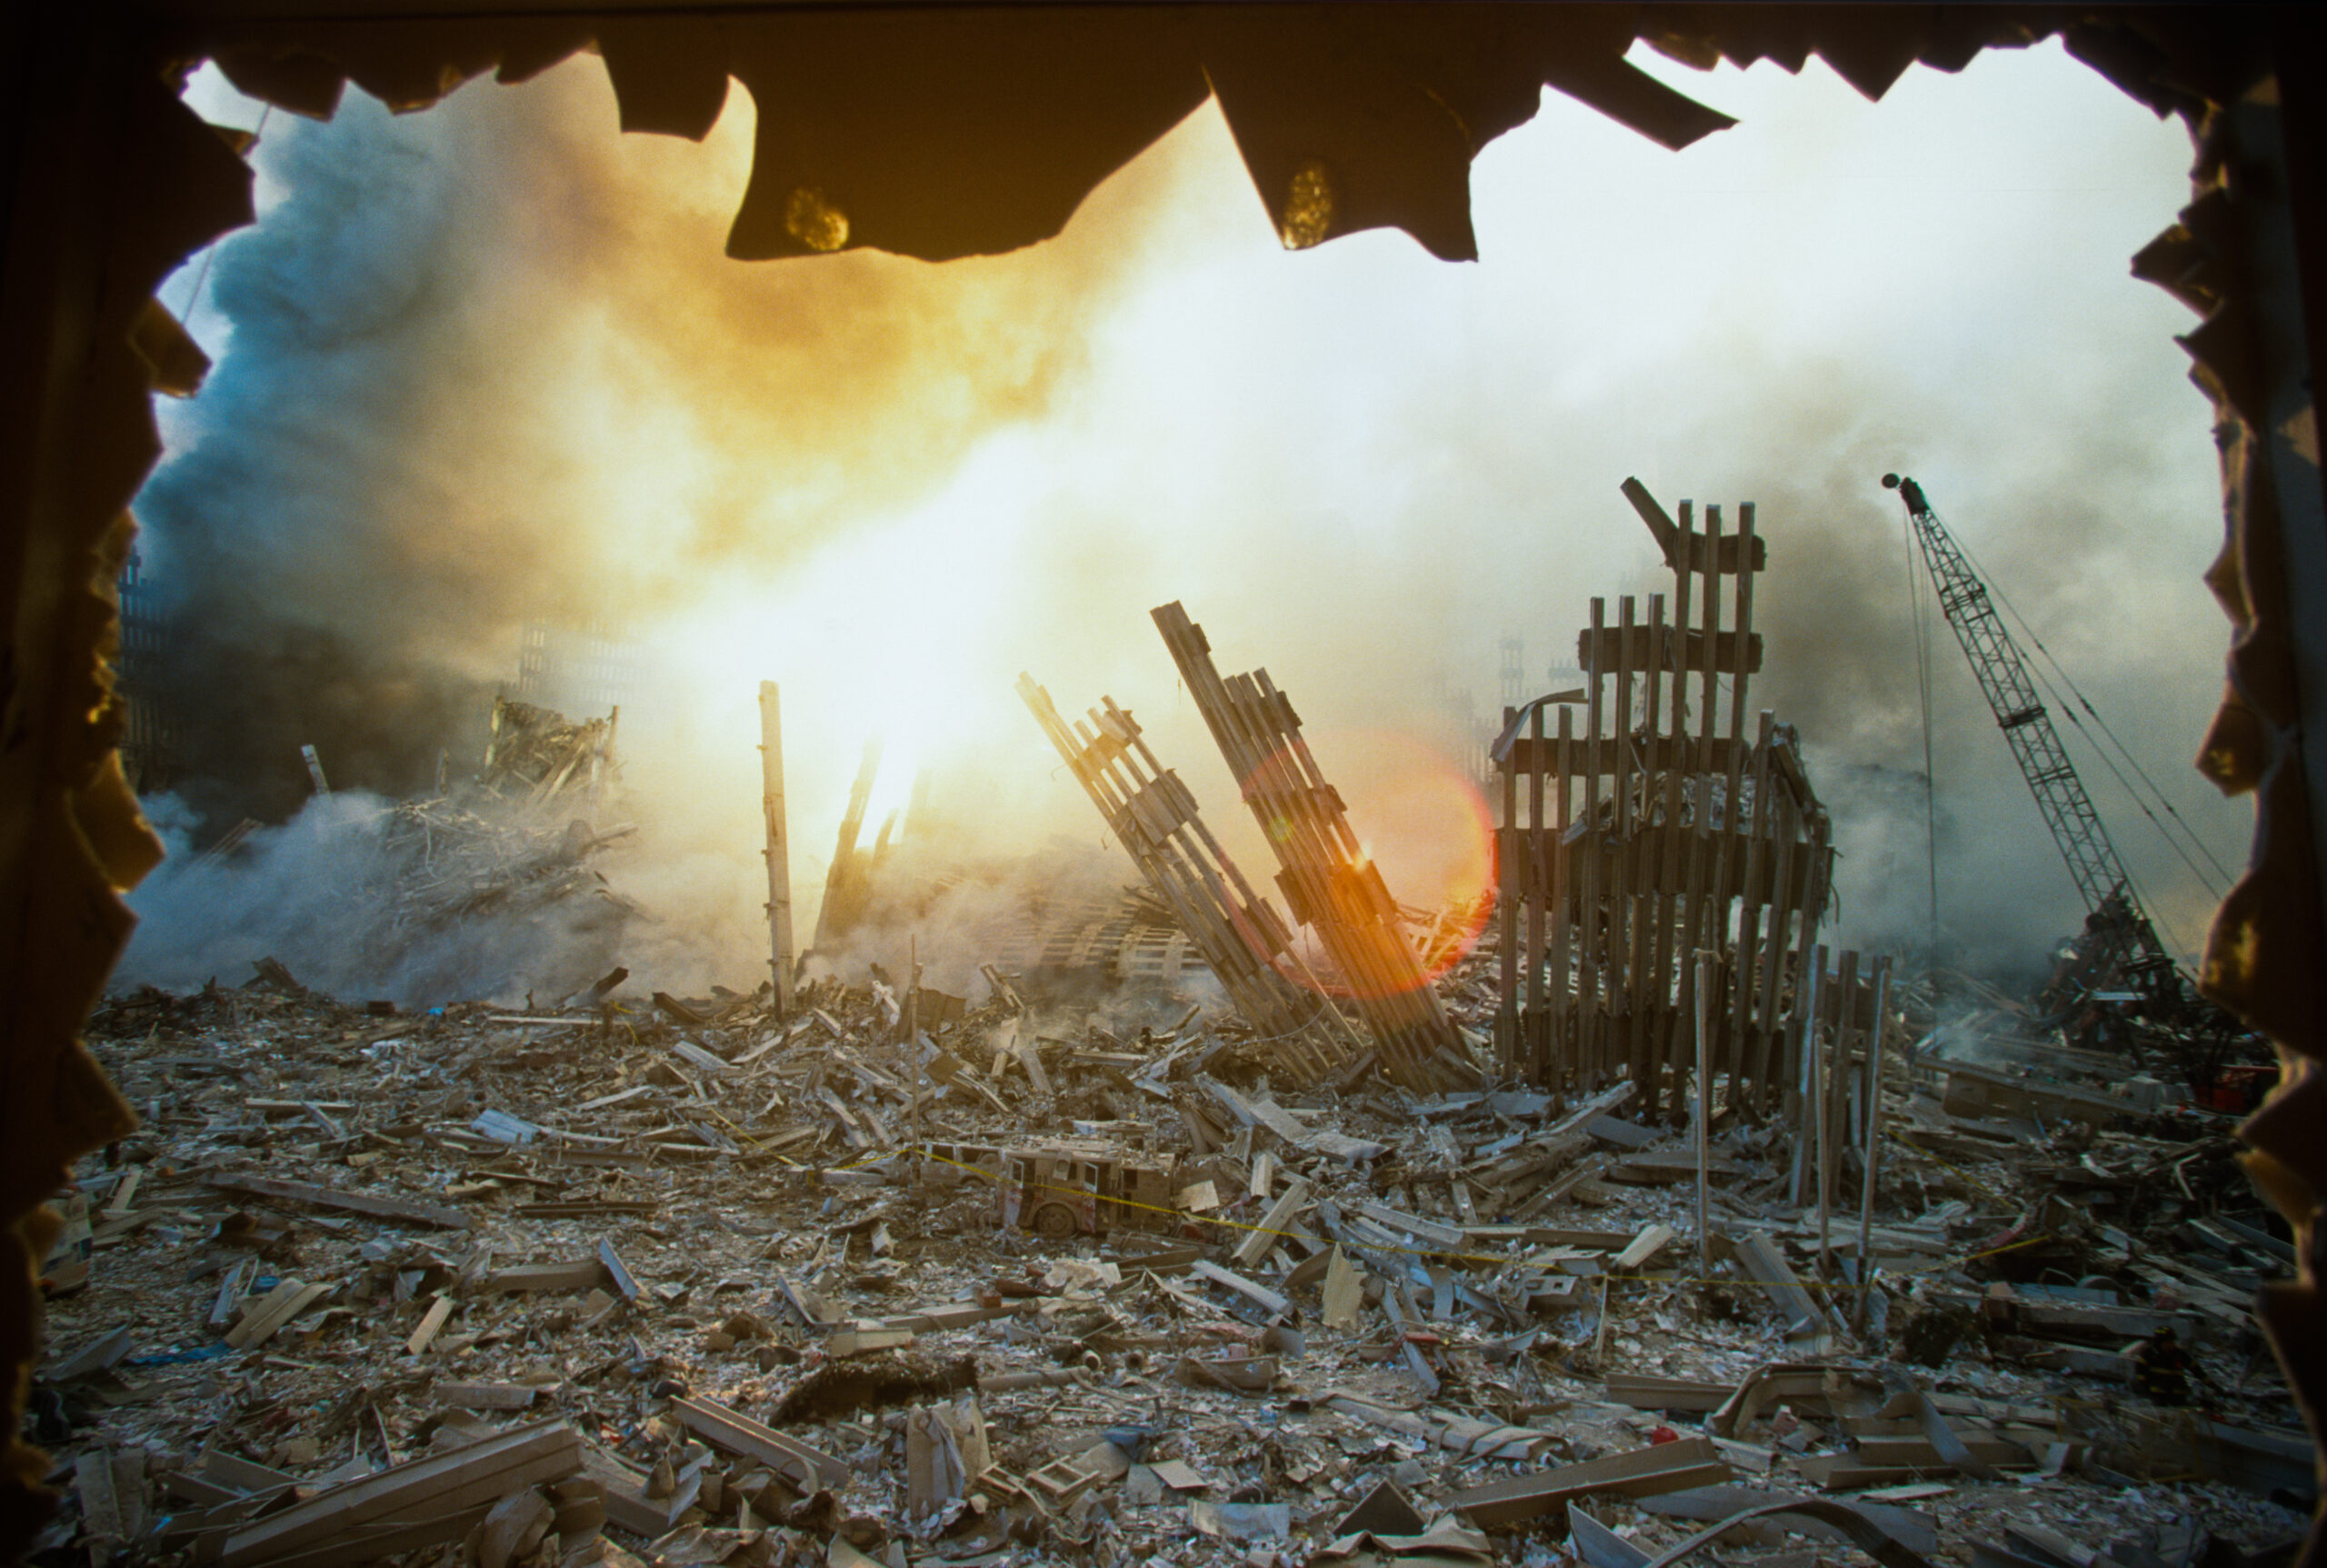 Нападение башен. Пентагон 11 сентября. Разрушенные башни Близнецы.